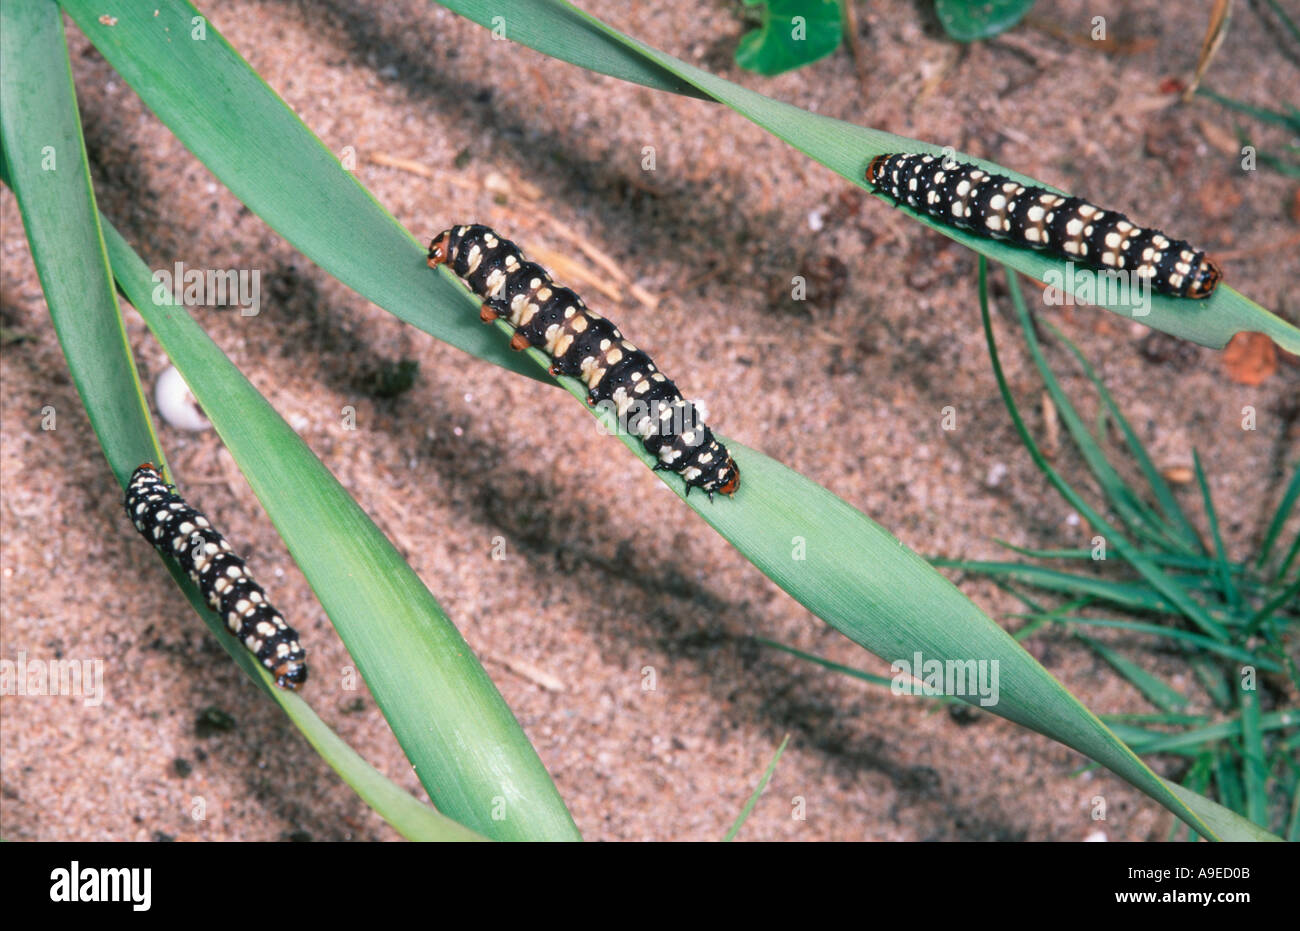 Brithys crini larvae on Pancratum maritimum host plant Spain Mediterranean Stock Photo